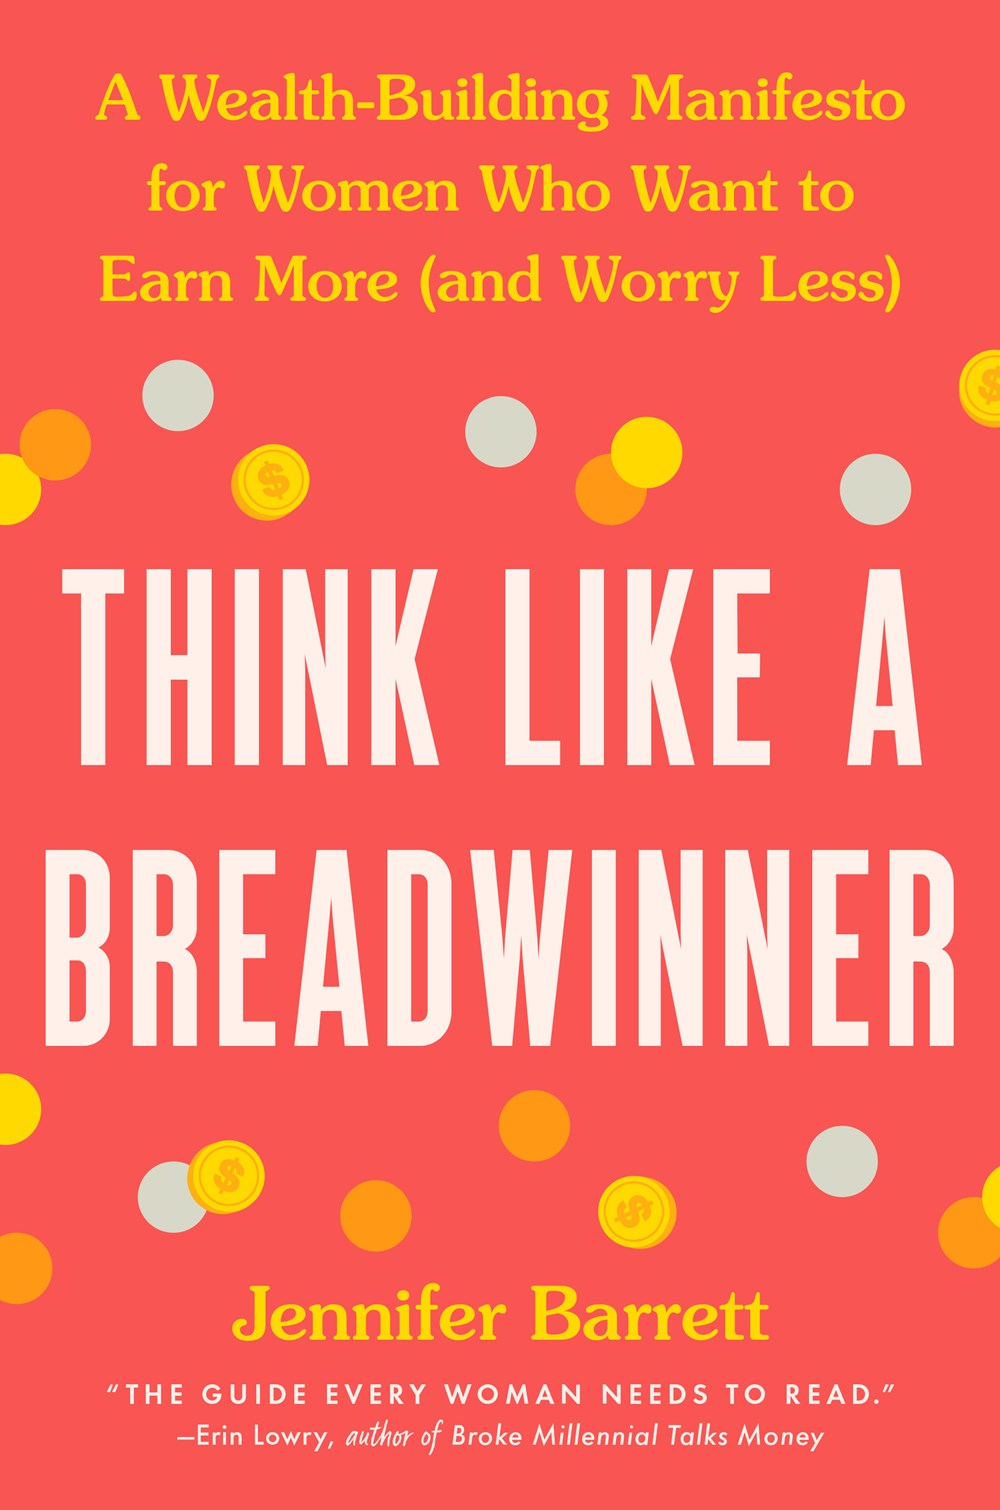 Think Like a Breadwinner